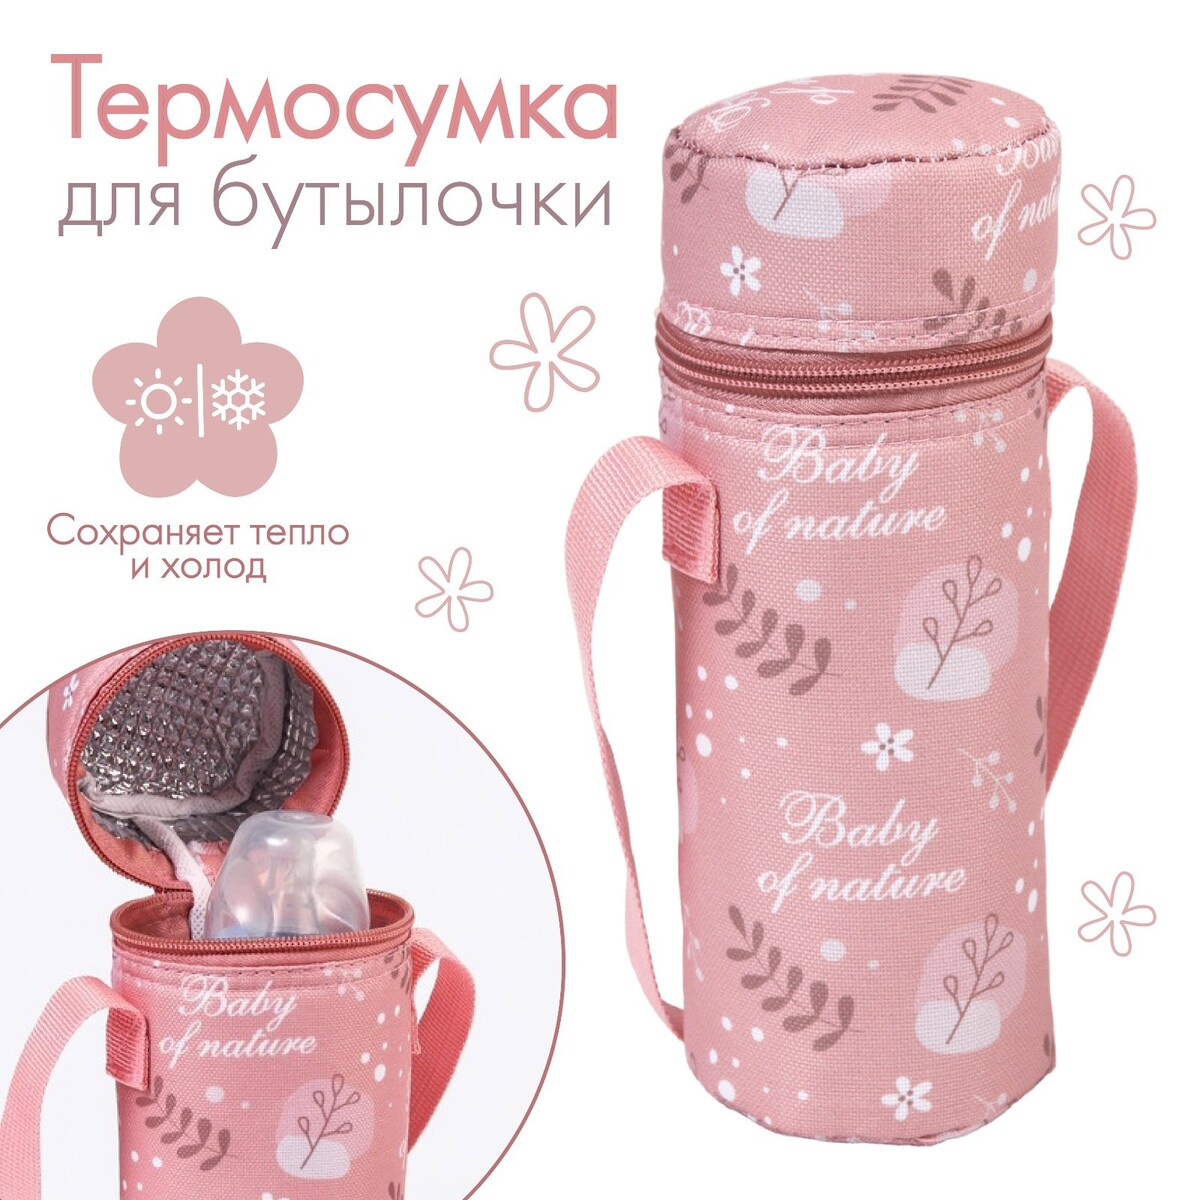 Термосумка для бутылочки baby of nature, форма тубус термосумка на молнии 6 л розовый